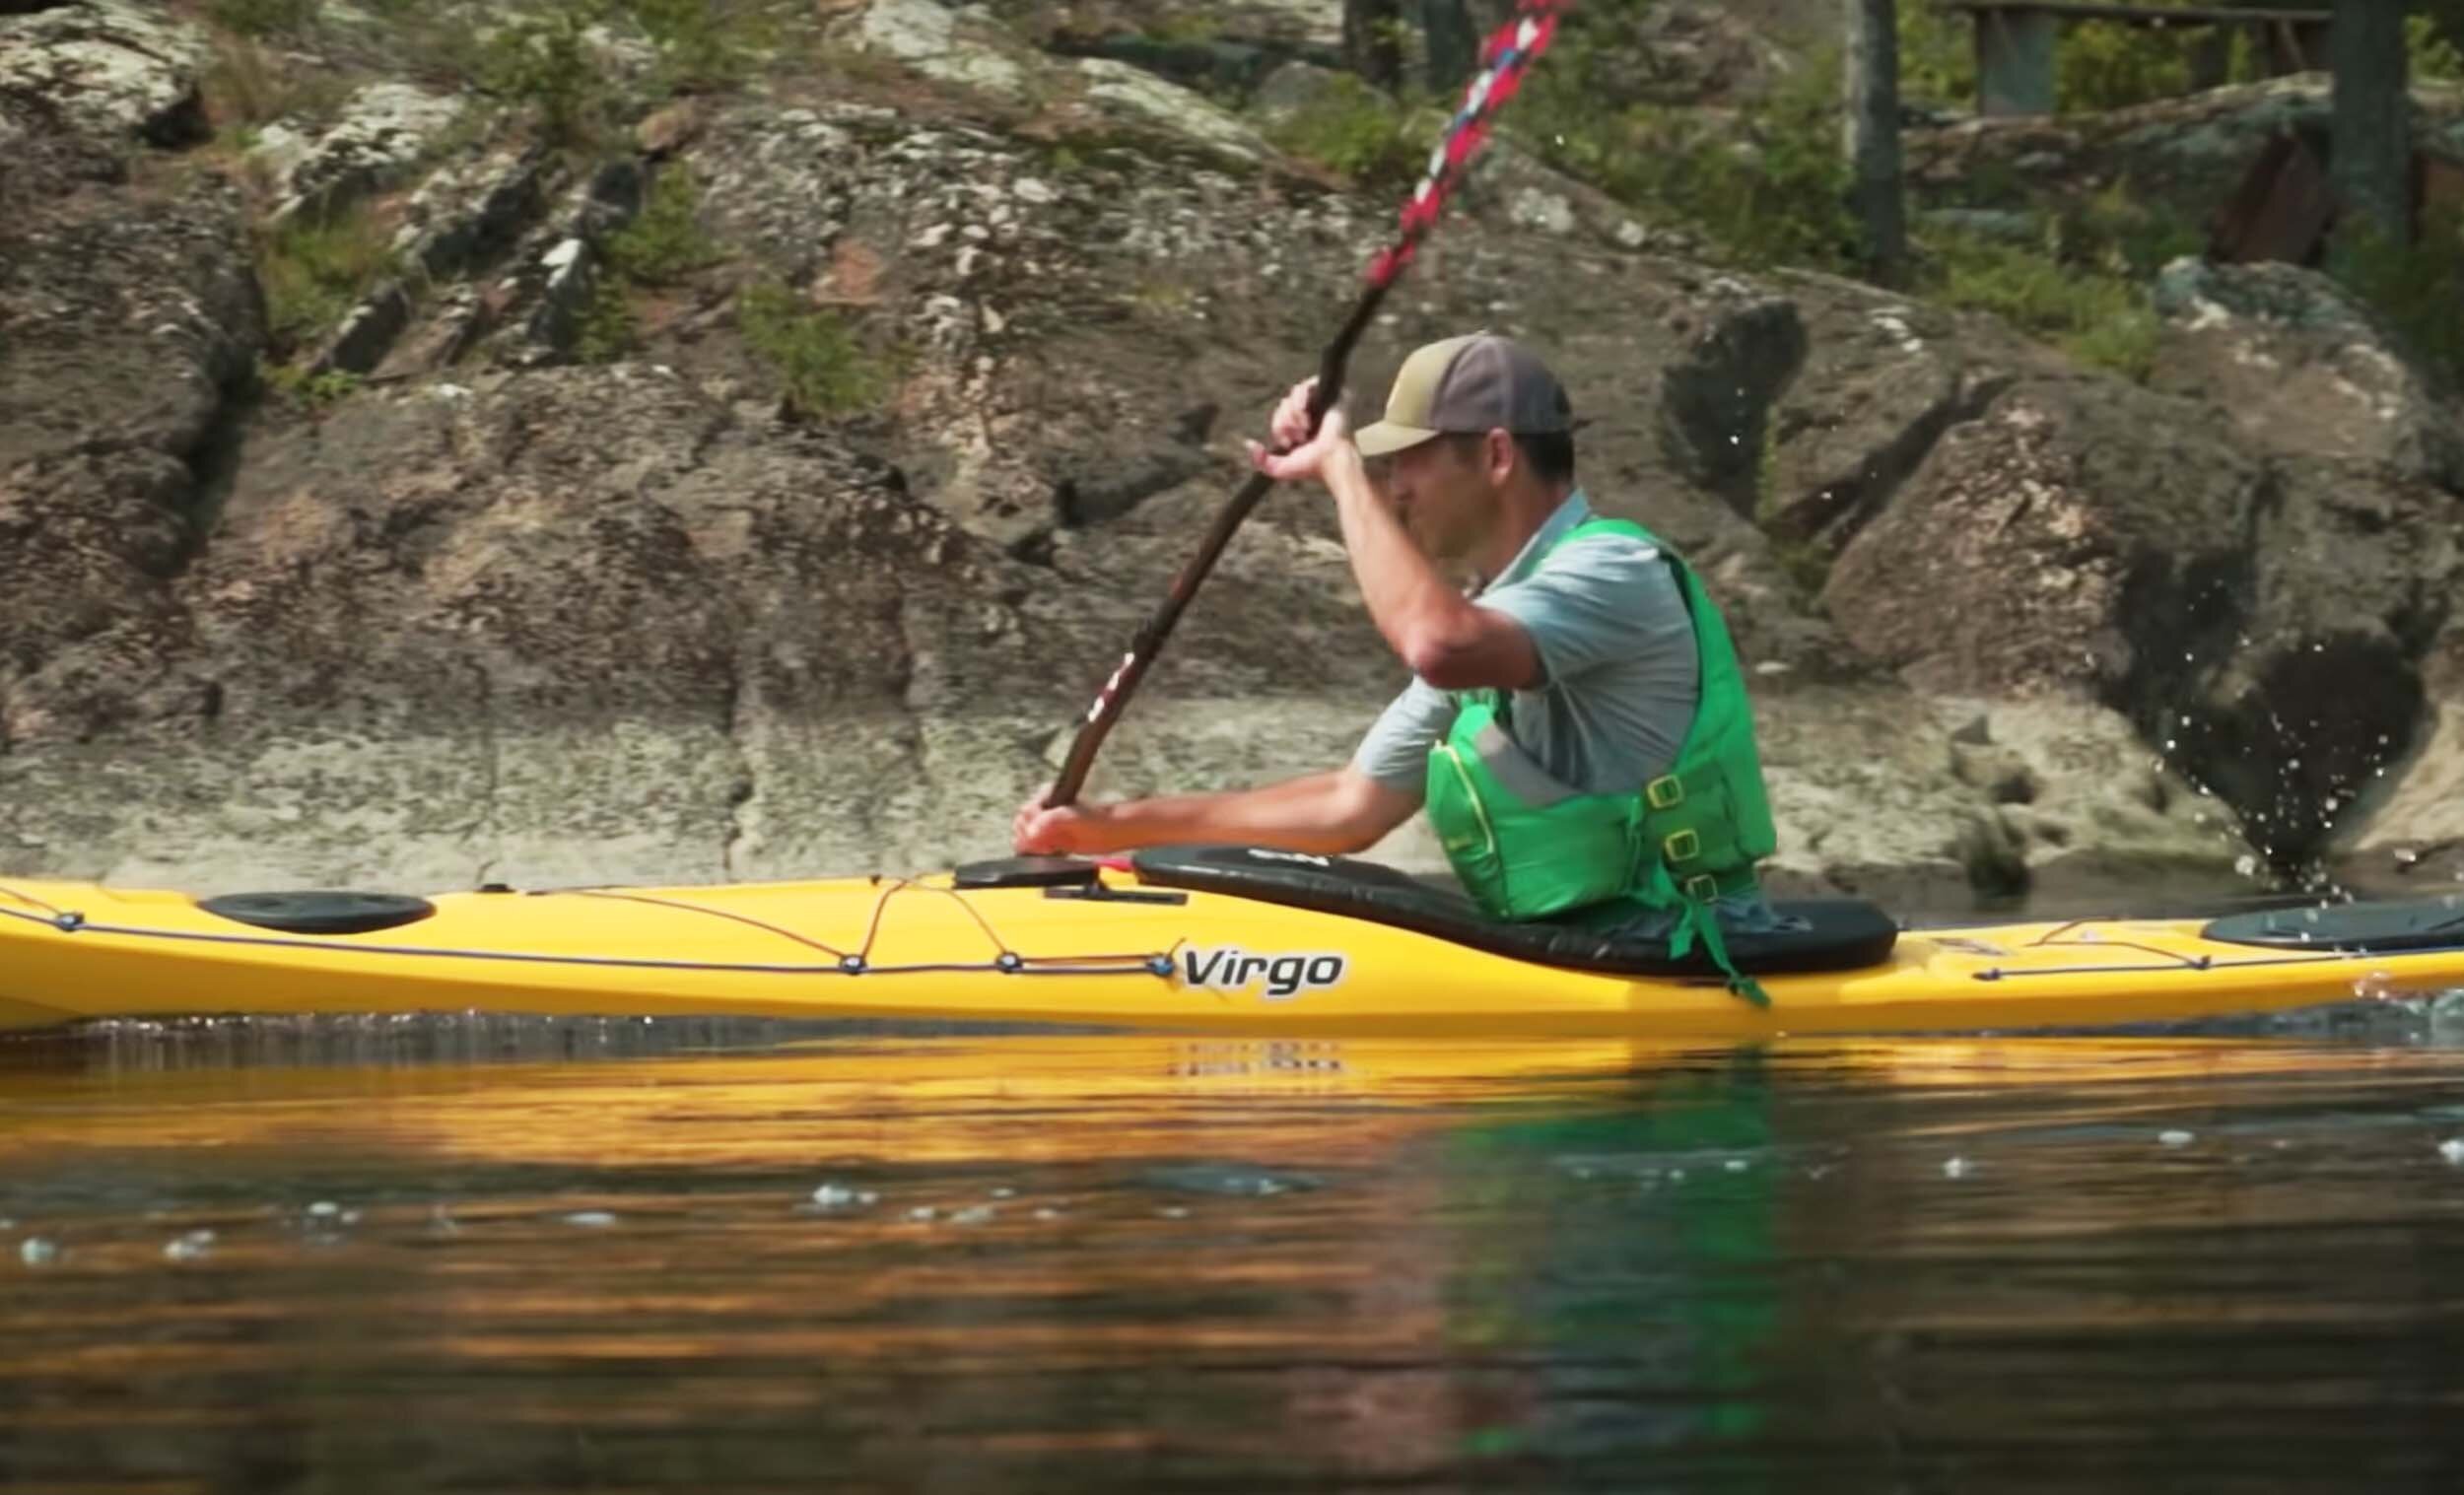 photo of ken whiting using the pandh virgo kayak in yellow on flat water kayaking and paddling gear reviews paddletv